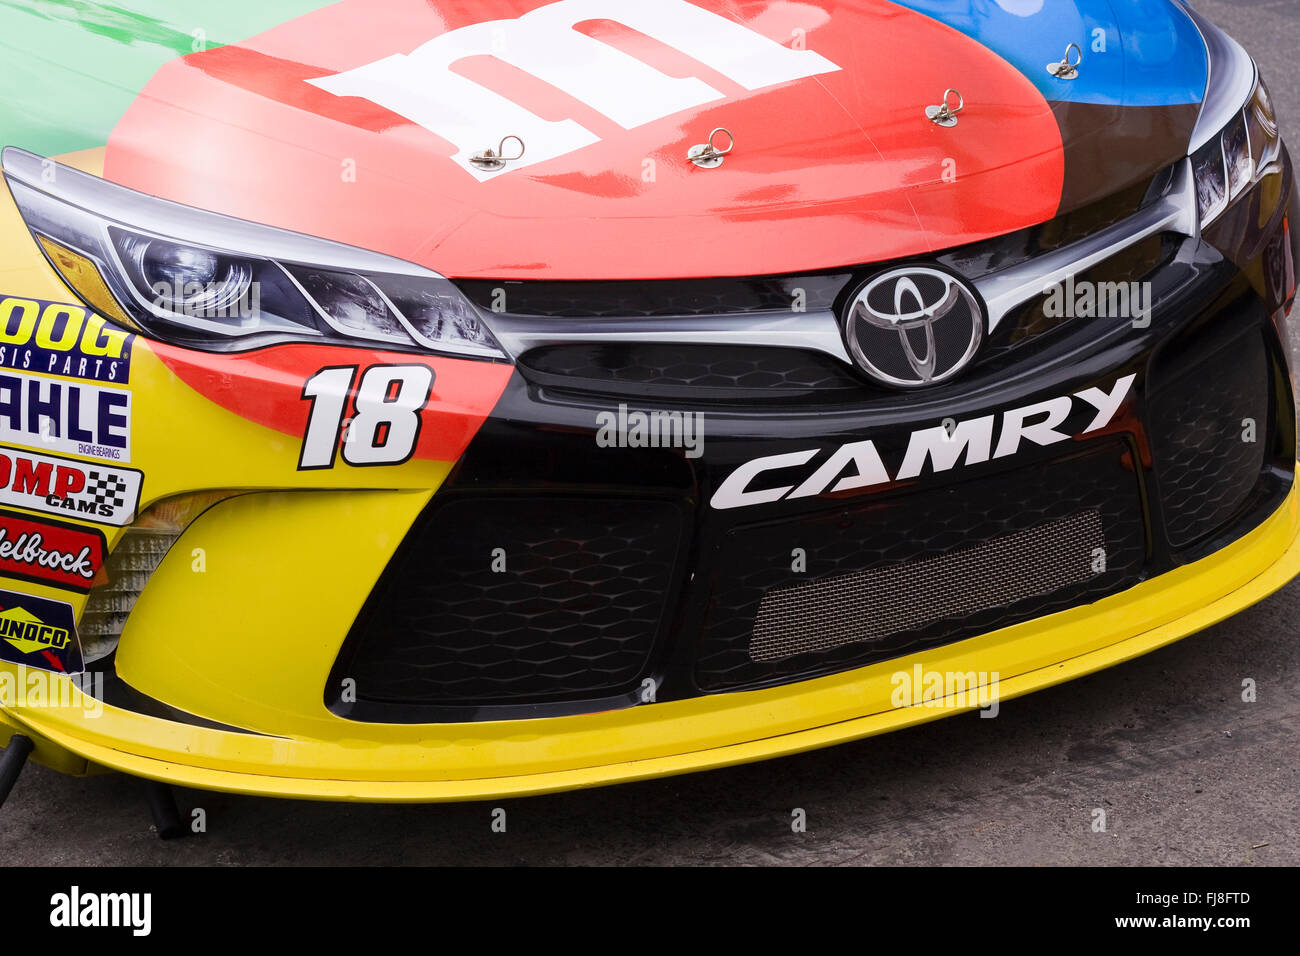 Estremità anteriore della griglia un NASCAR M&M Racecar #18 pilotata da Kyle Busch che ha vinto la Daytona 500 Stock Car gara nel 2015 Foto Stock